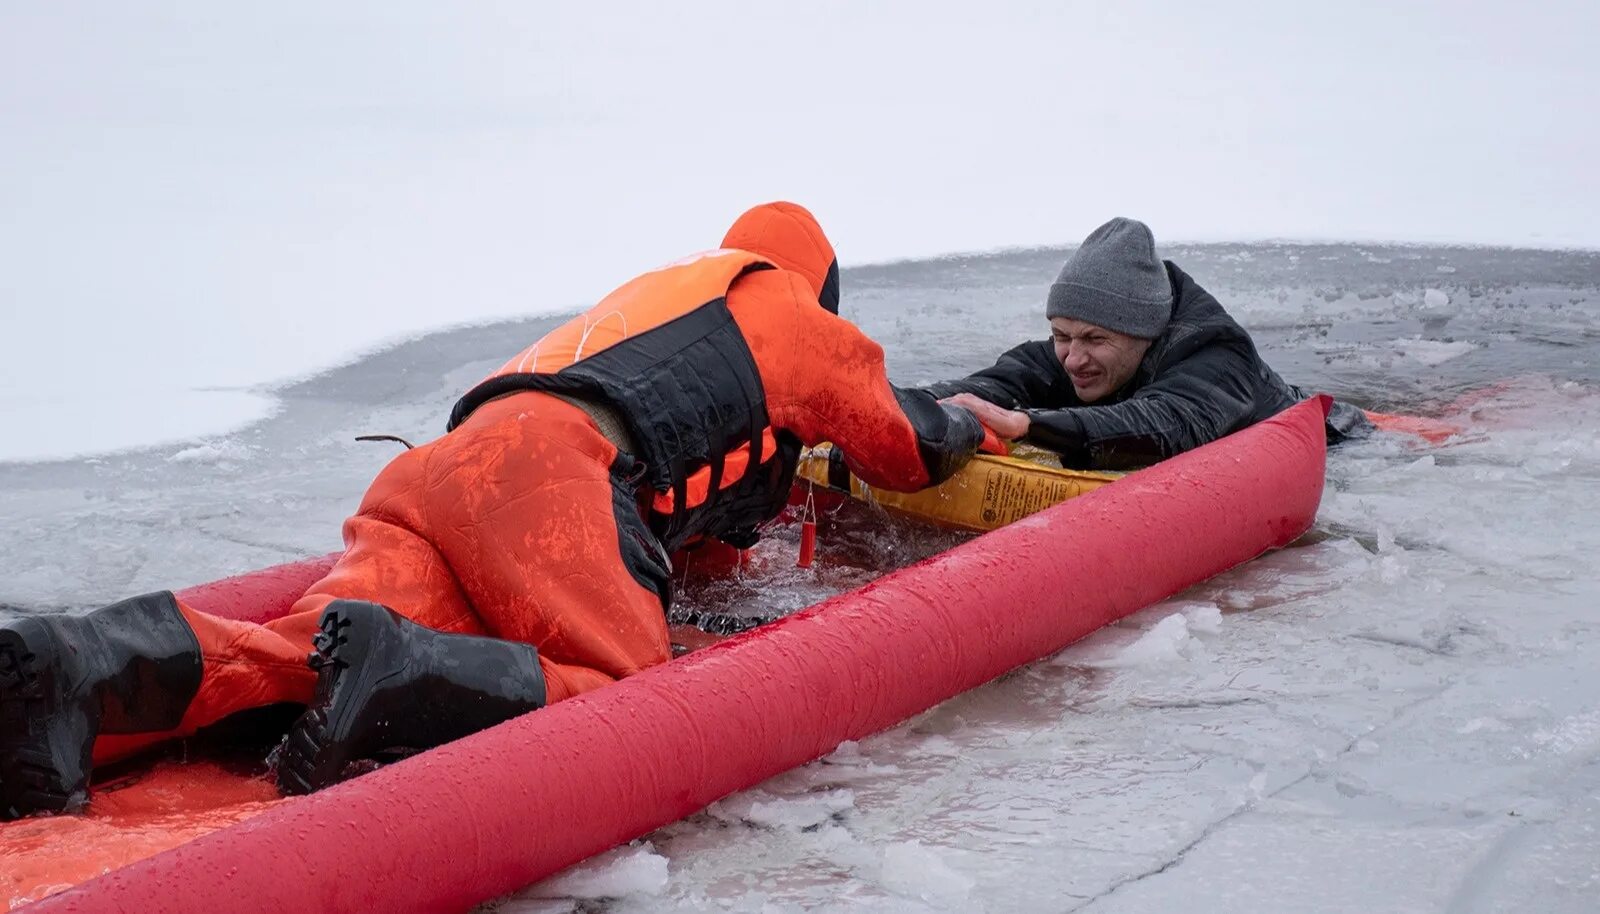 Спасение человека провалившегося под лед. Спасение провалившегося под лед. Человек провалился под лед.